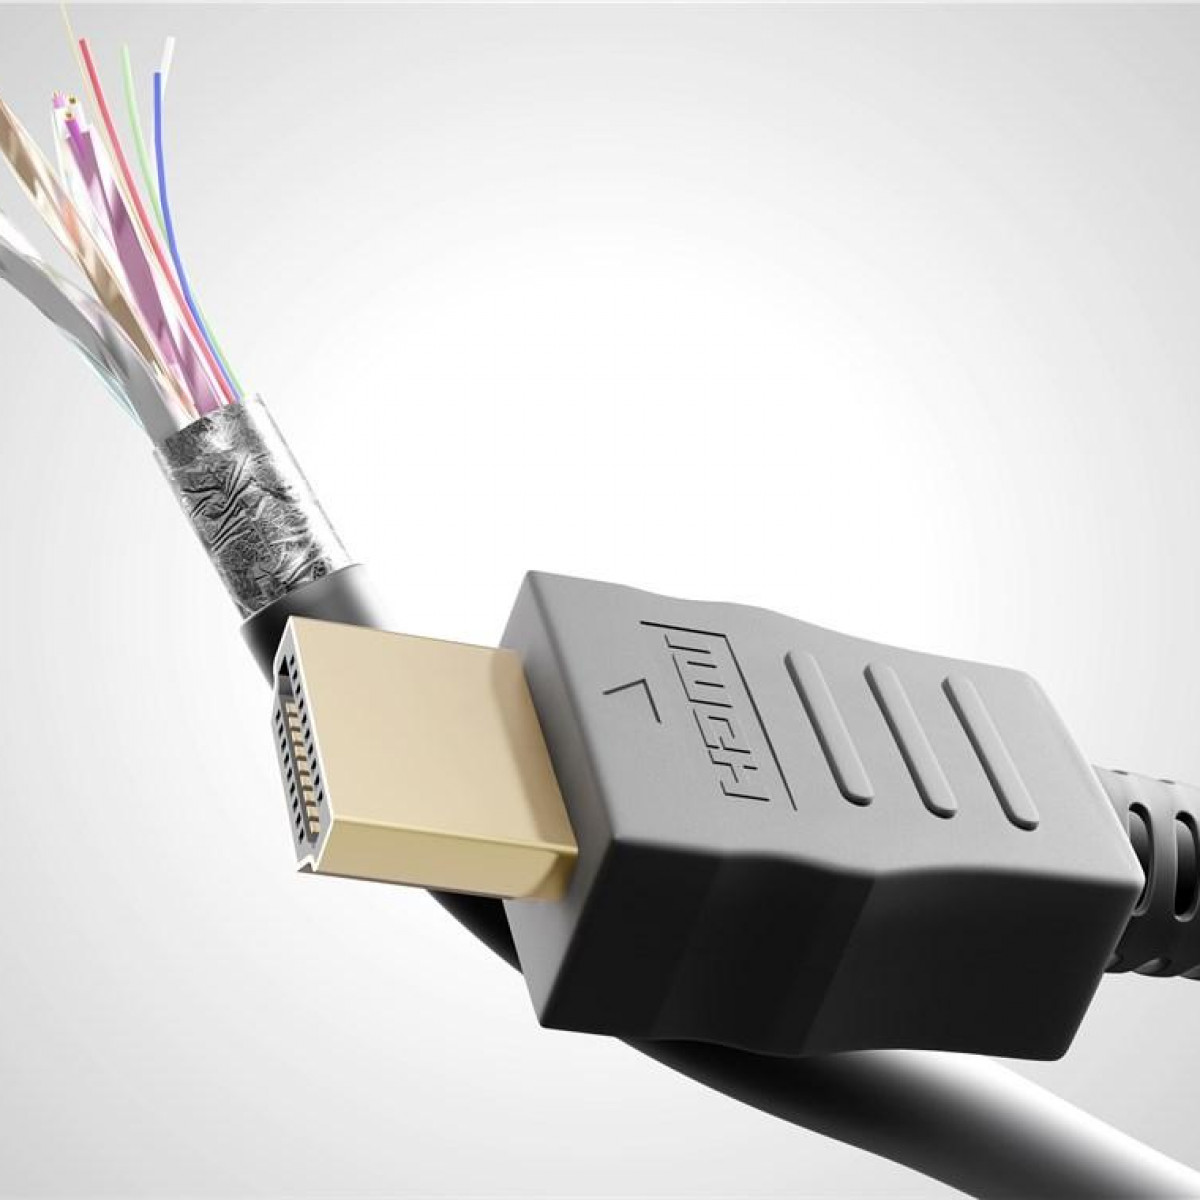 High-Speed-HDMI™-Verlängerungskabel Ethernet HDMI Verlängerungskabel GOOBAY mit